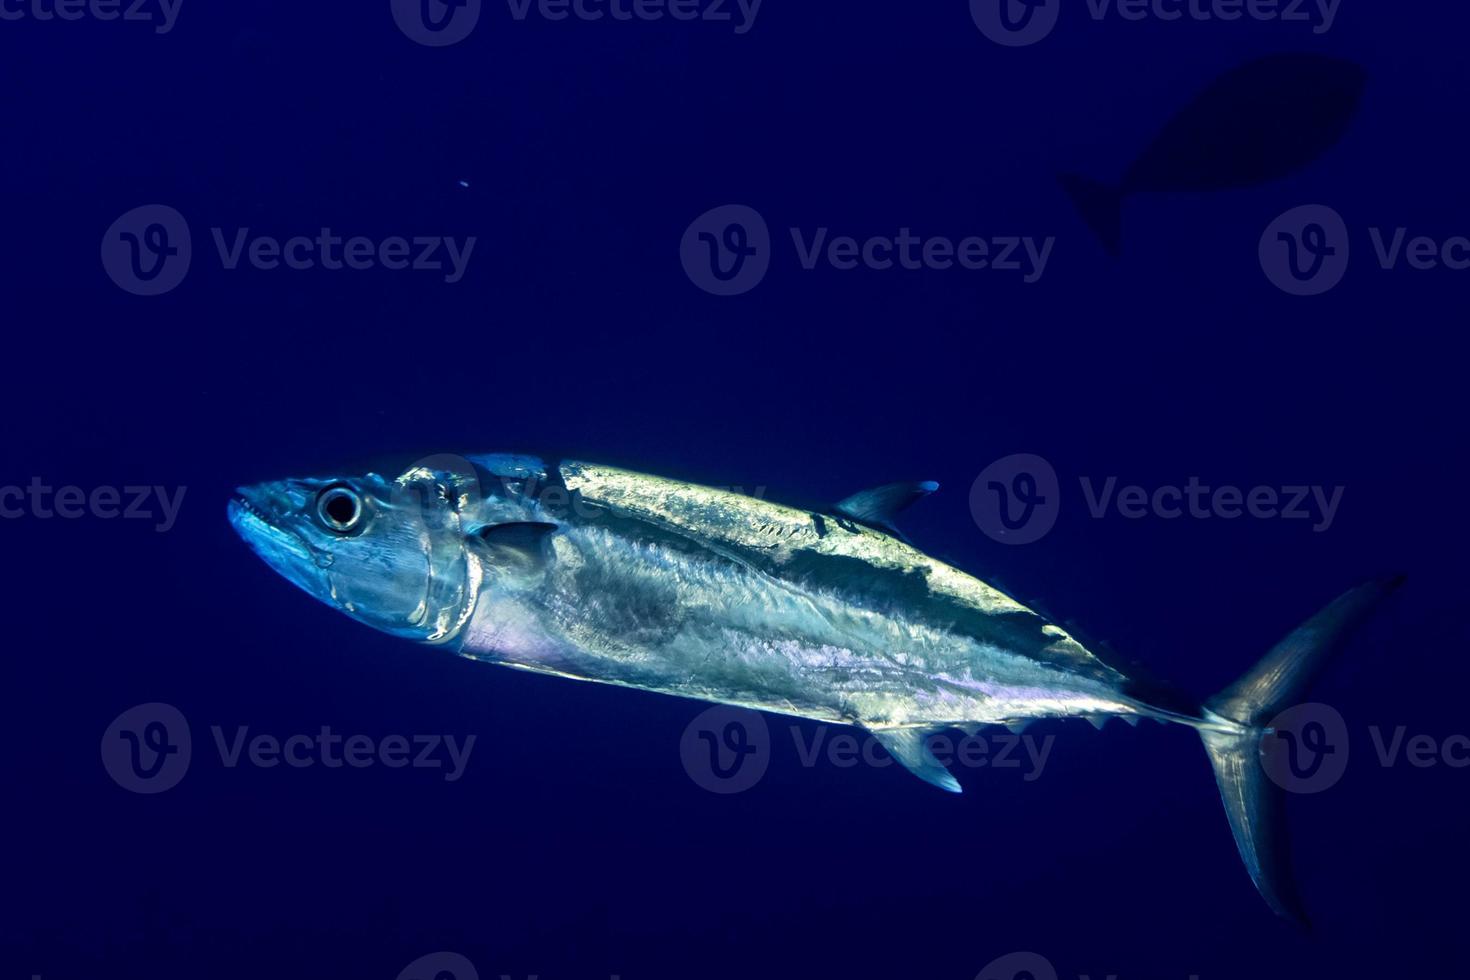 geelvintonijn tonijn onderwater- foto